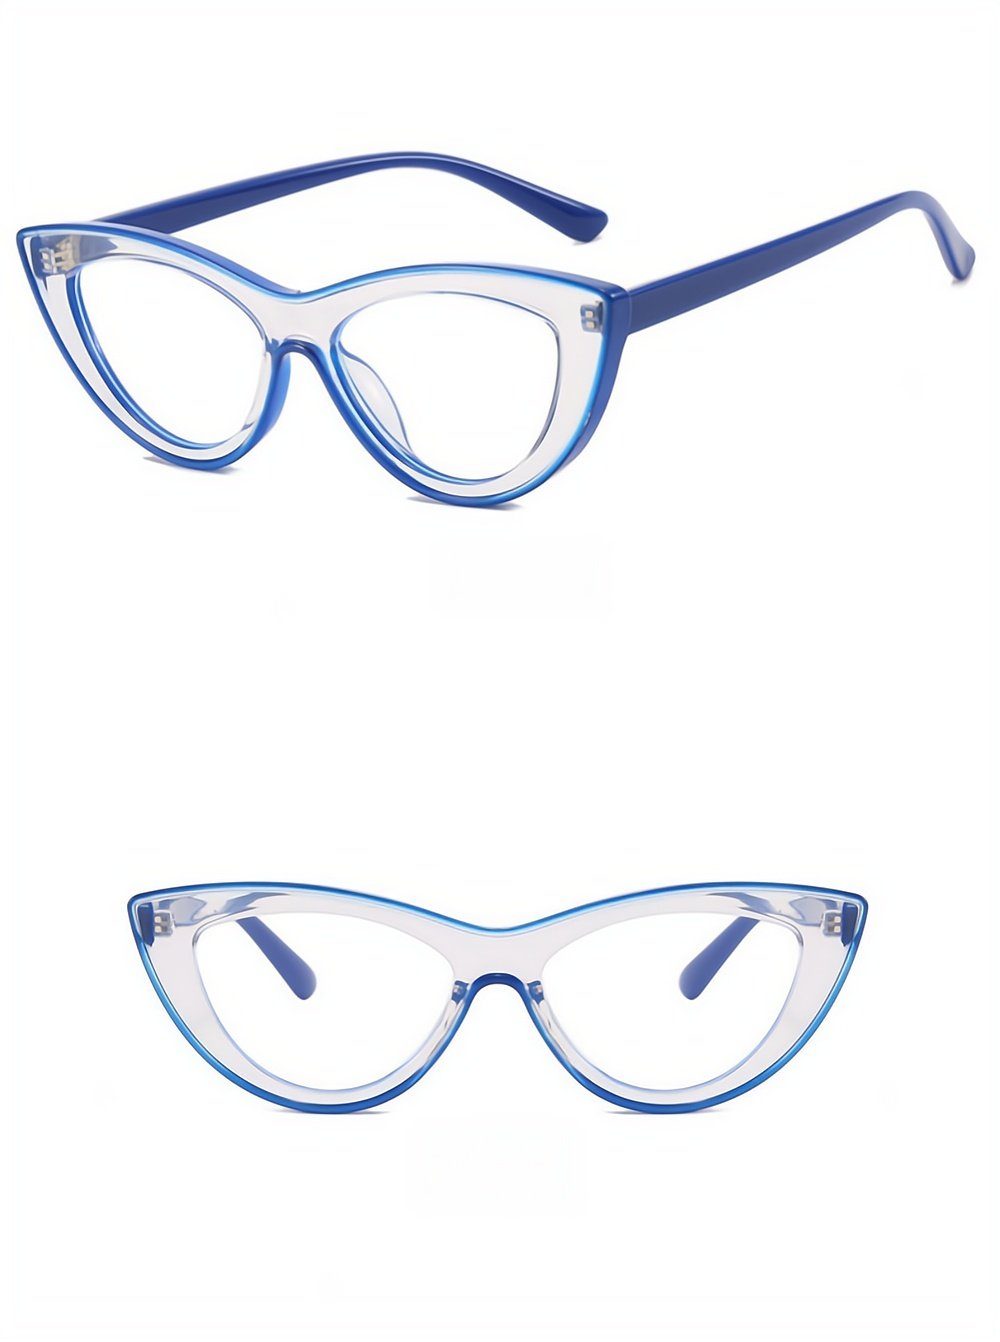 PACIEA Brille Cat EyeTransparente Blaulichtfilter Gaming Anti-Müdigkeit UV Schutz